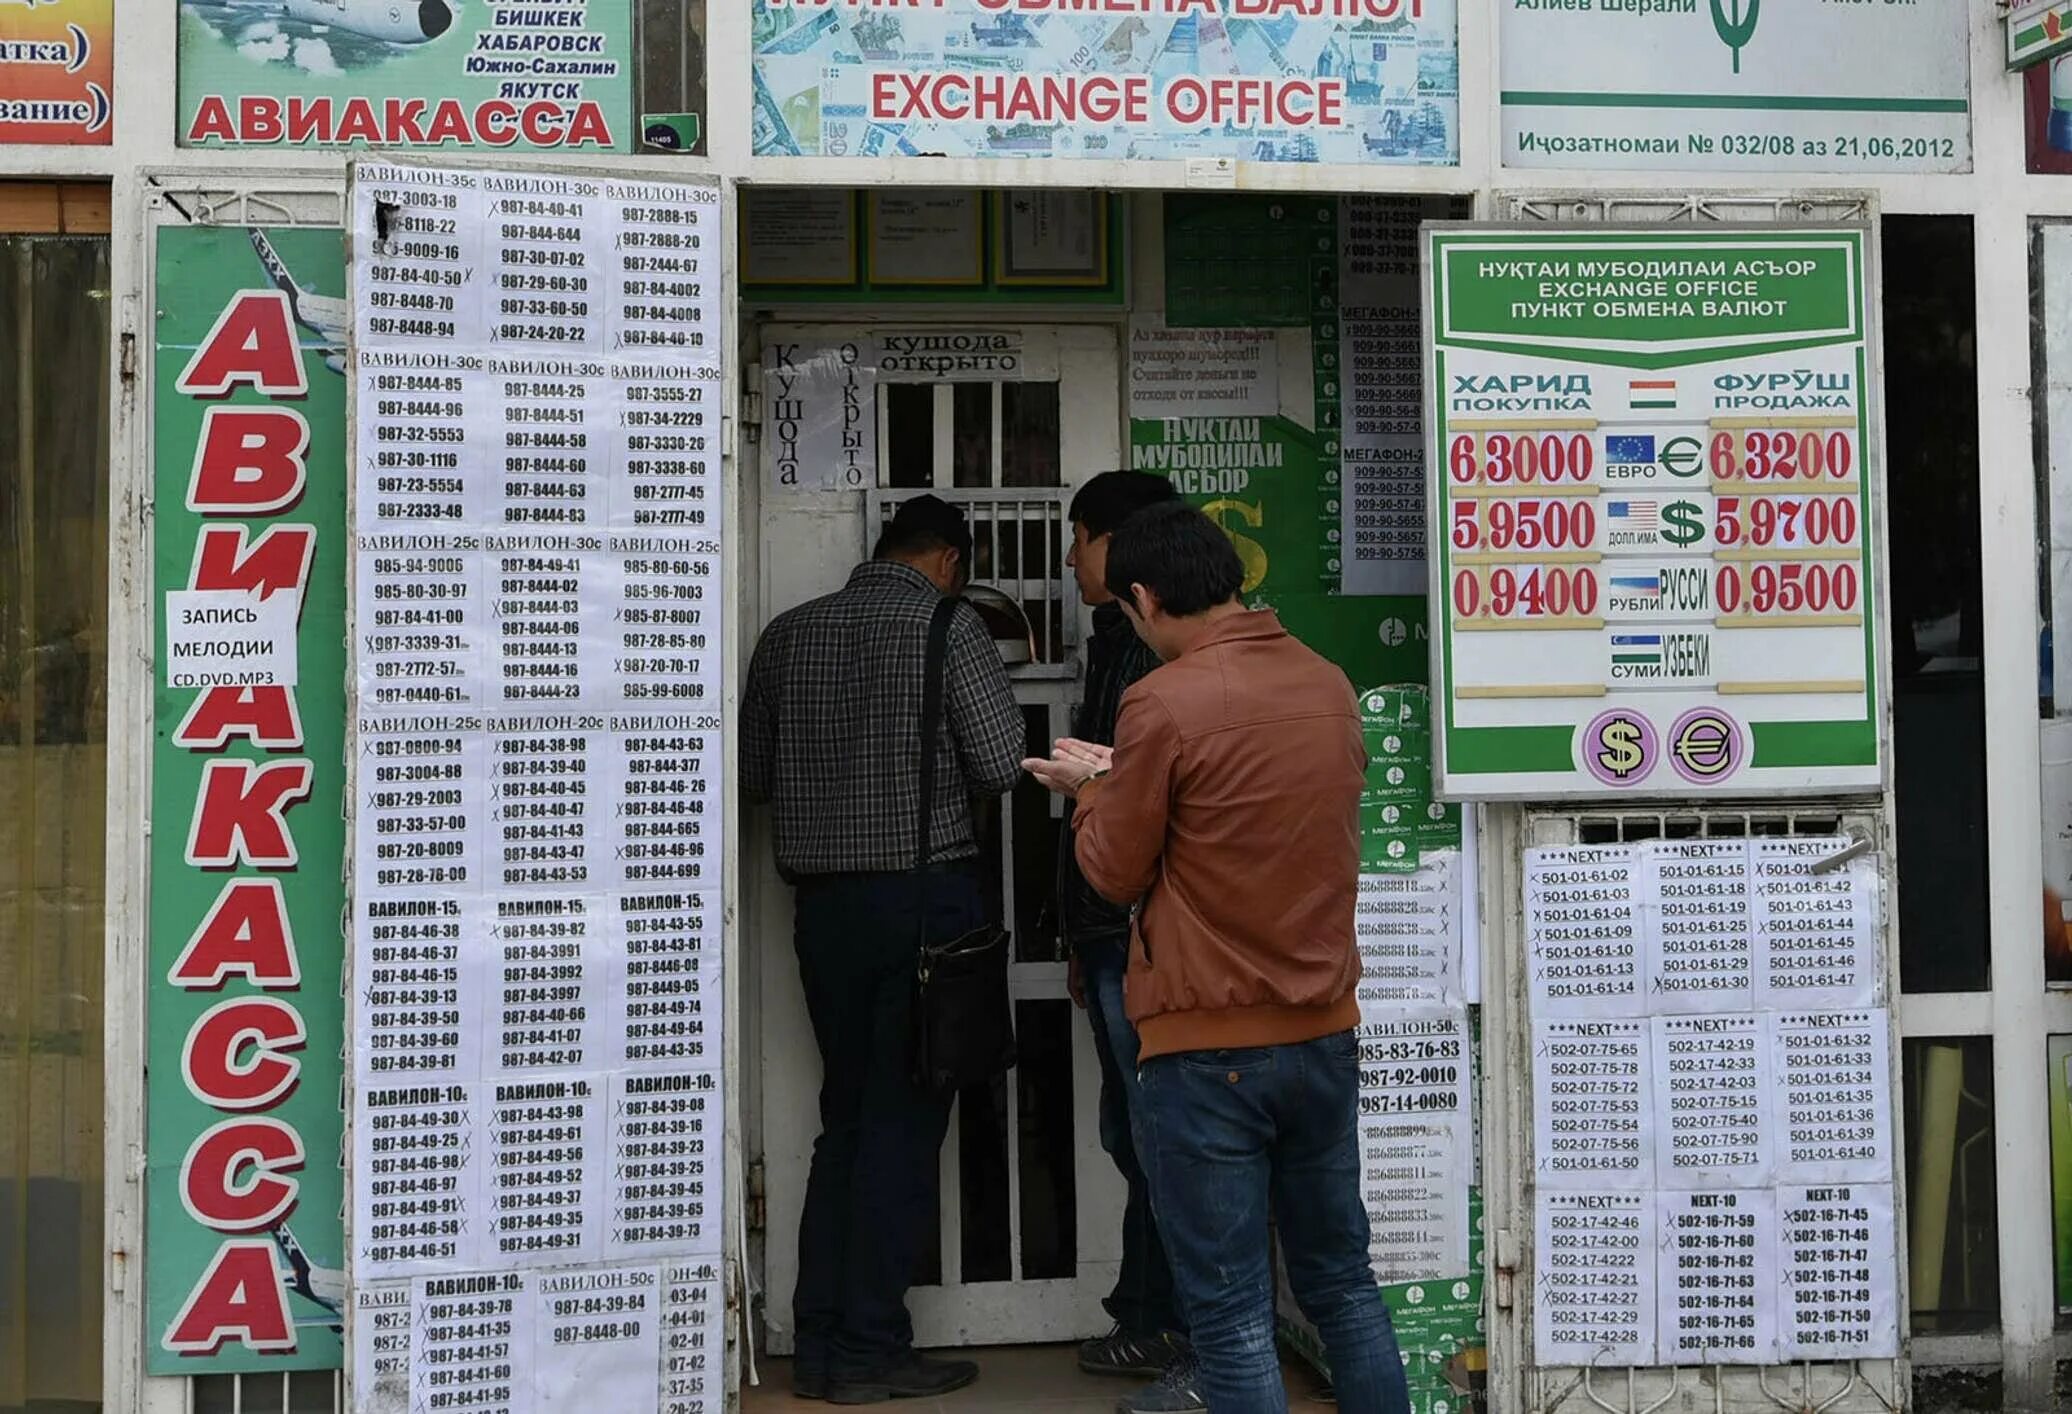 Рубил 1000 курс таджикистан сегодня. Обменные пункты в Таджикистане. Курс рубля к Сомони. Обмен валюты. Курсы валют в Таджикистане.